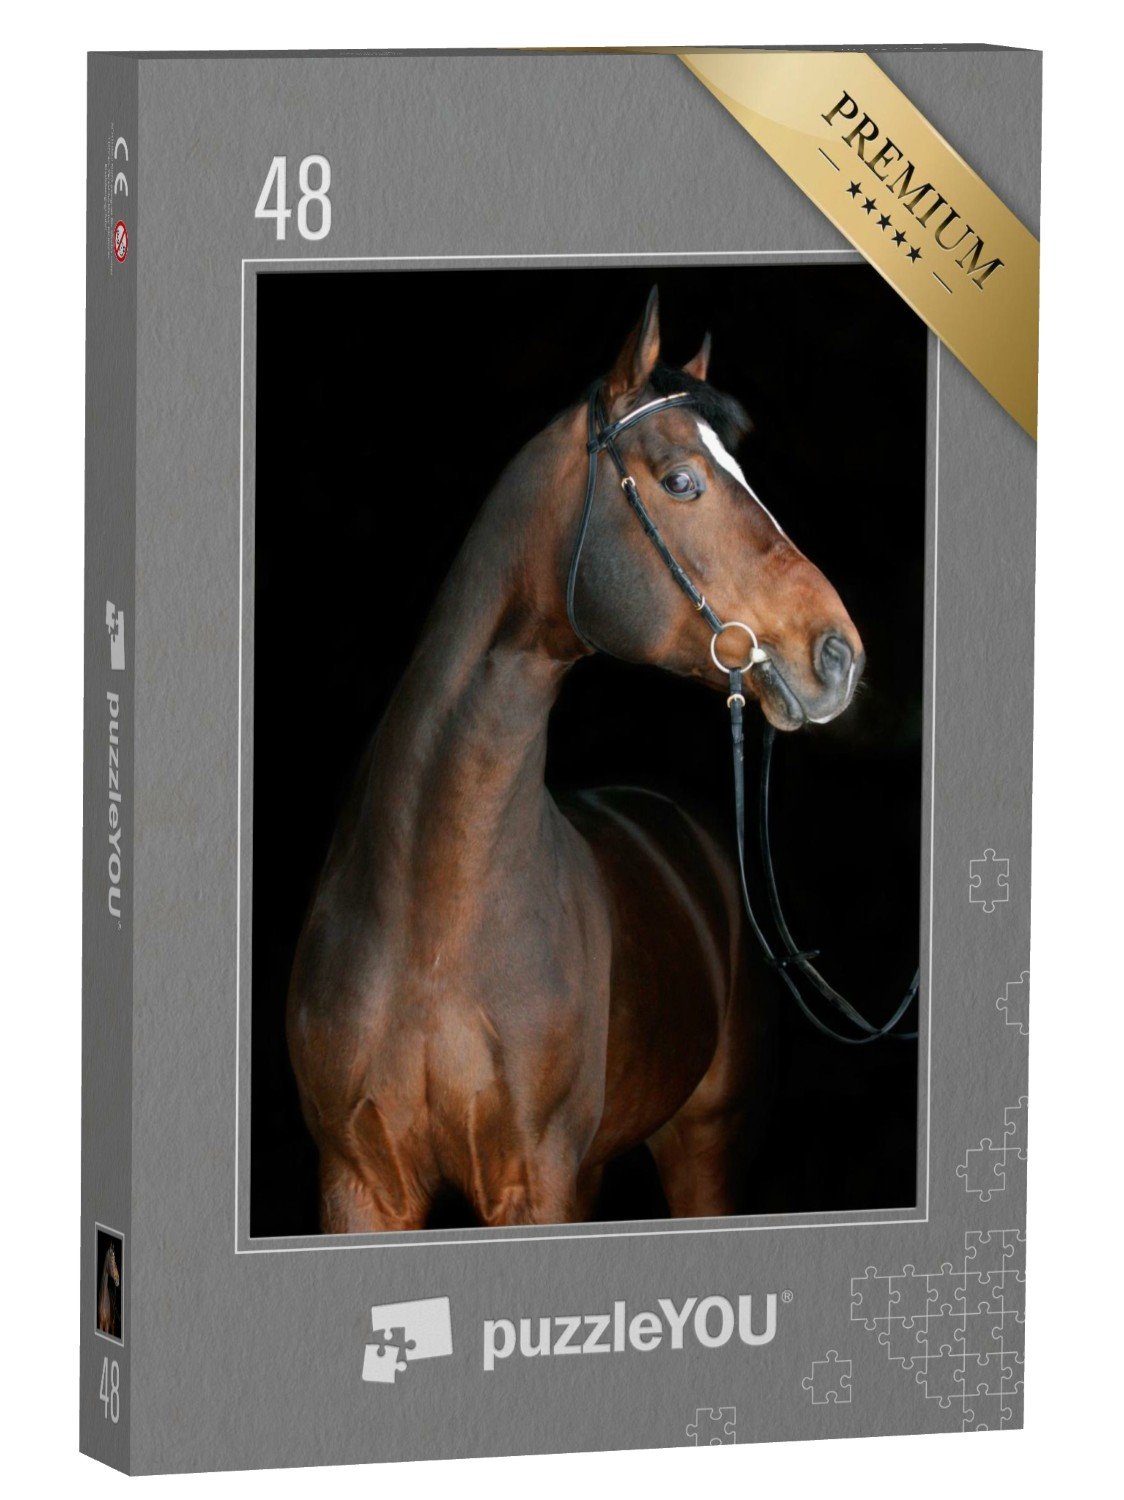 puzzleYOU Puzzle Farbspiel: Braunes Pferd auf schwarzem Hintergrund, 48 Puzzleteile, puzzleYOU-Kollektionen Pferde, Hannoveraner Pferde